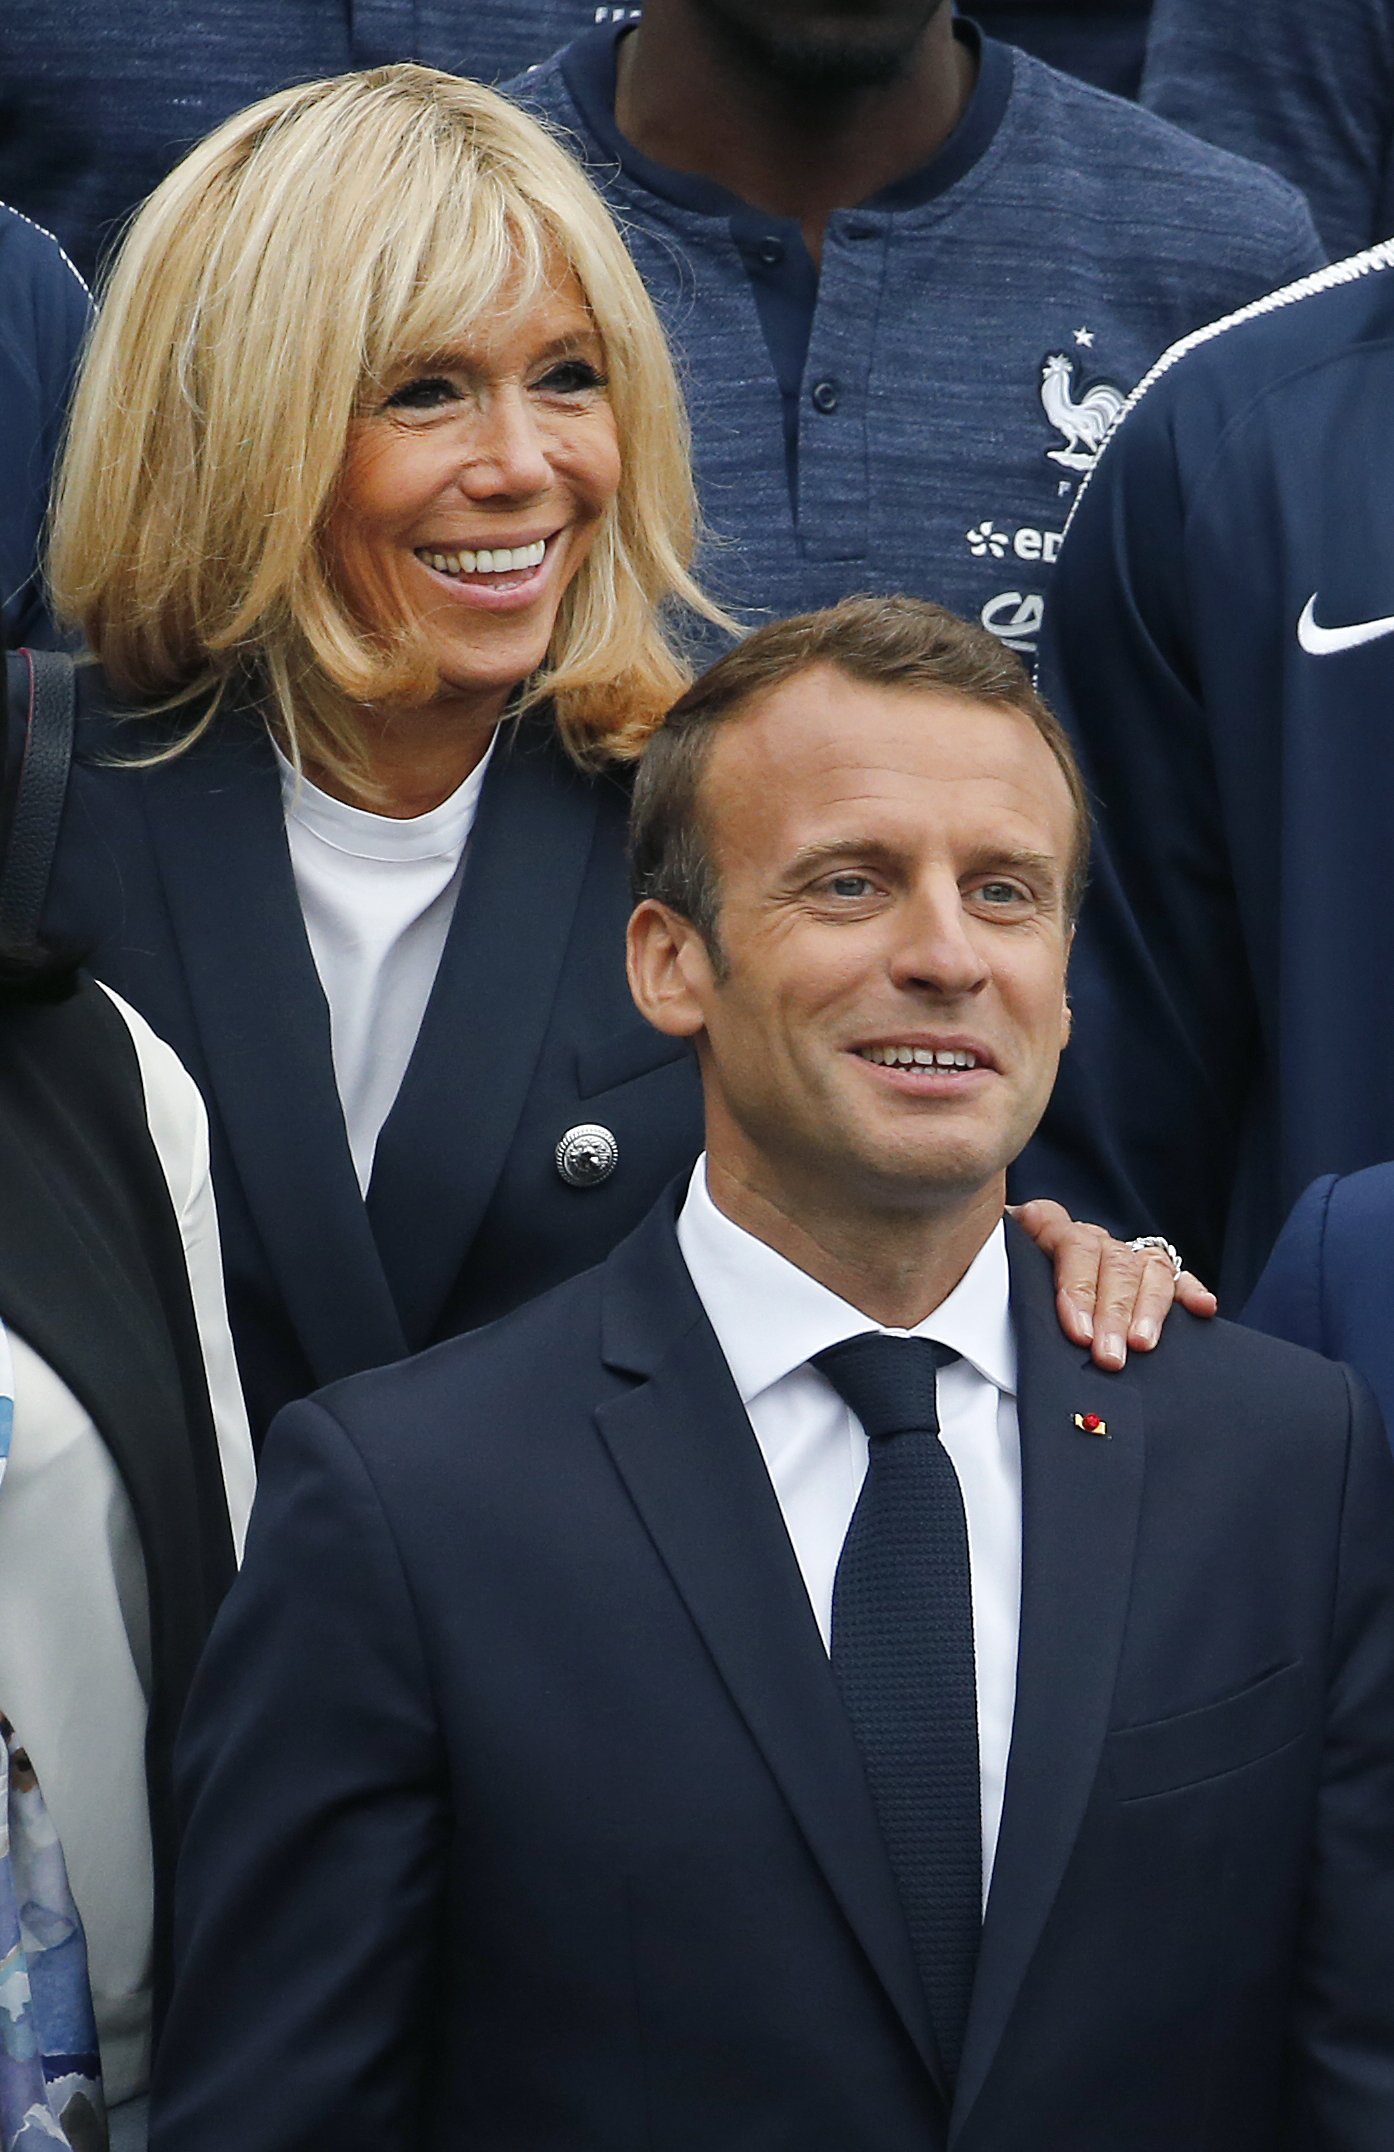 Emmanuel Macron y Brigitte Macron el 5 de junio de 2018 en Clairefontaine-en-Yvelines, Francia. | Foto: Getty Images